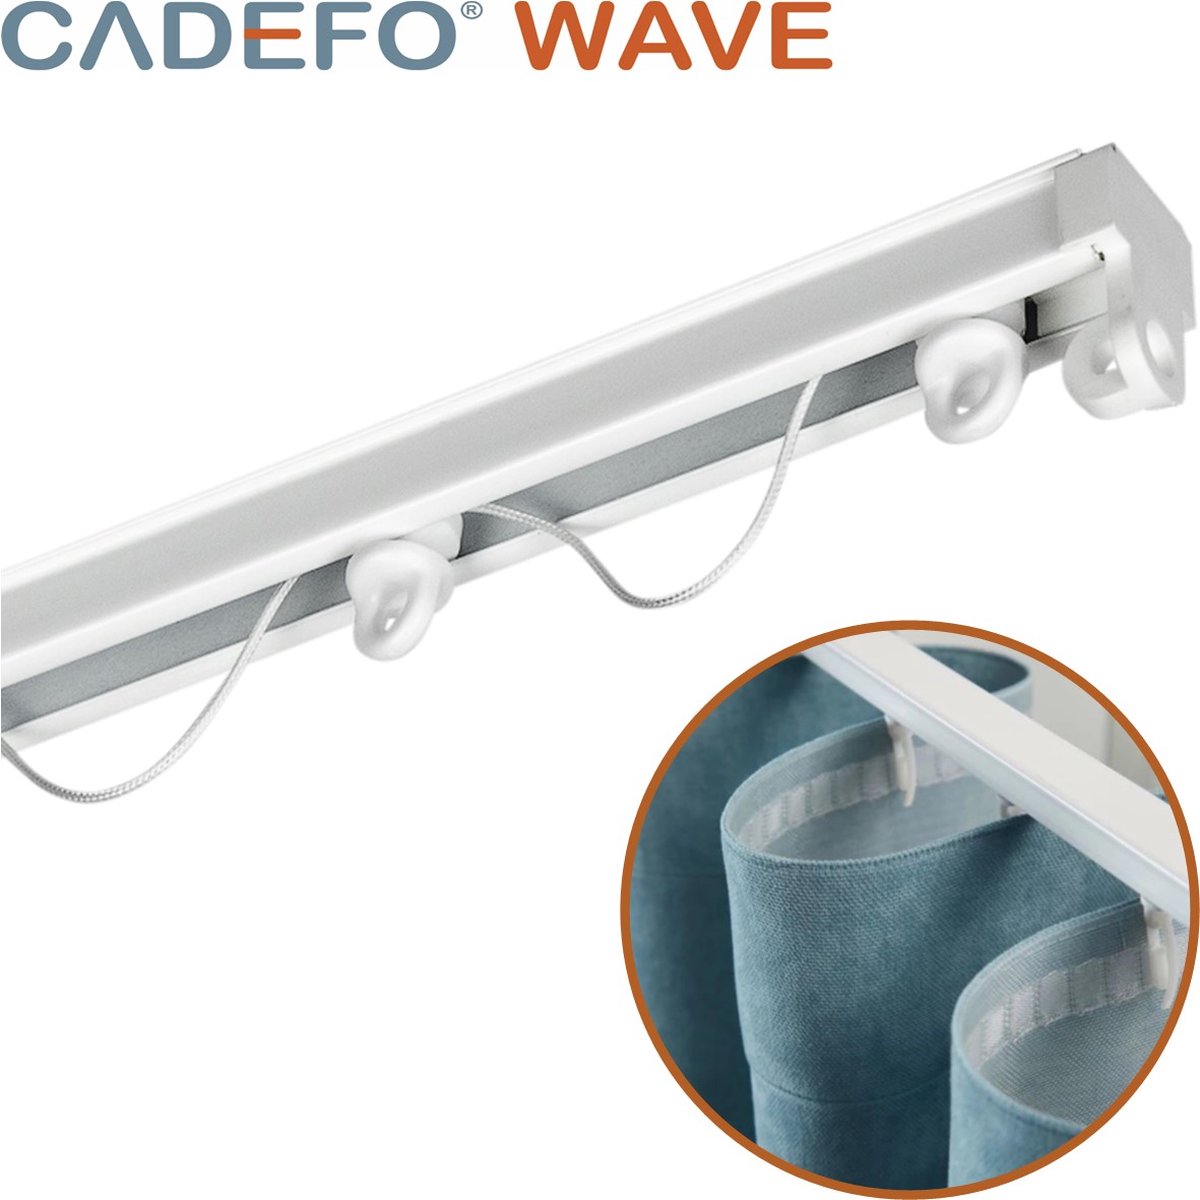 CADEFO WAVE (351 - 400 cm) Gordijnrails - Compleet op maat! - UIT 1 STUK - Leverbaar tot 6 meter - Plafondbevestiging - Lengte 397 cm